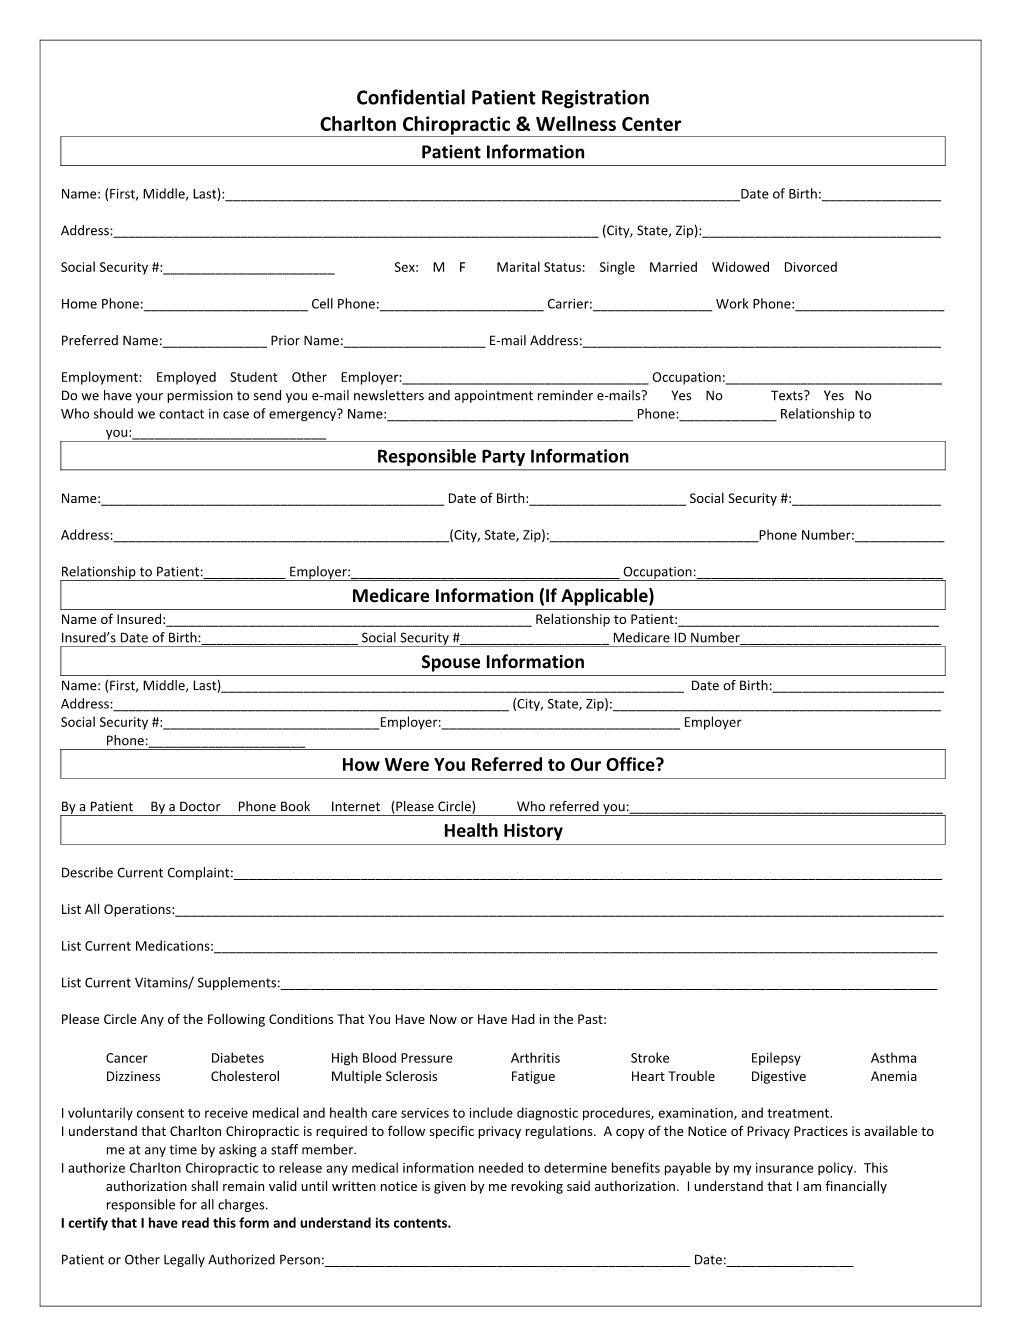 Confidential Patient Registration